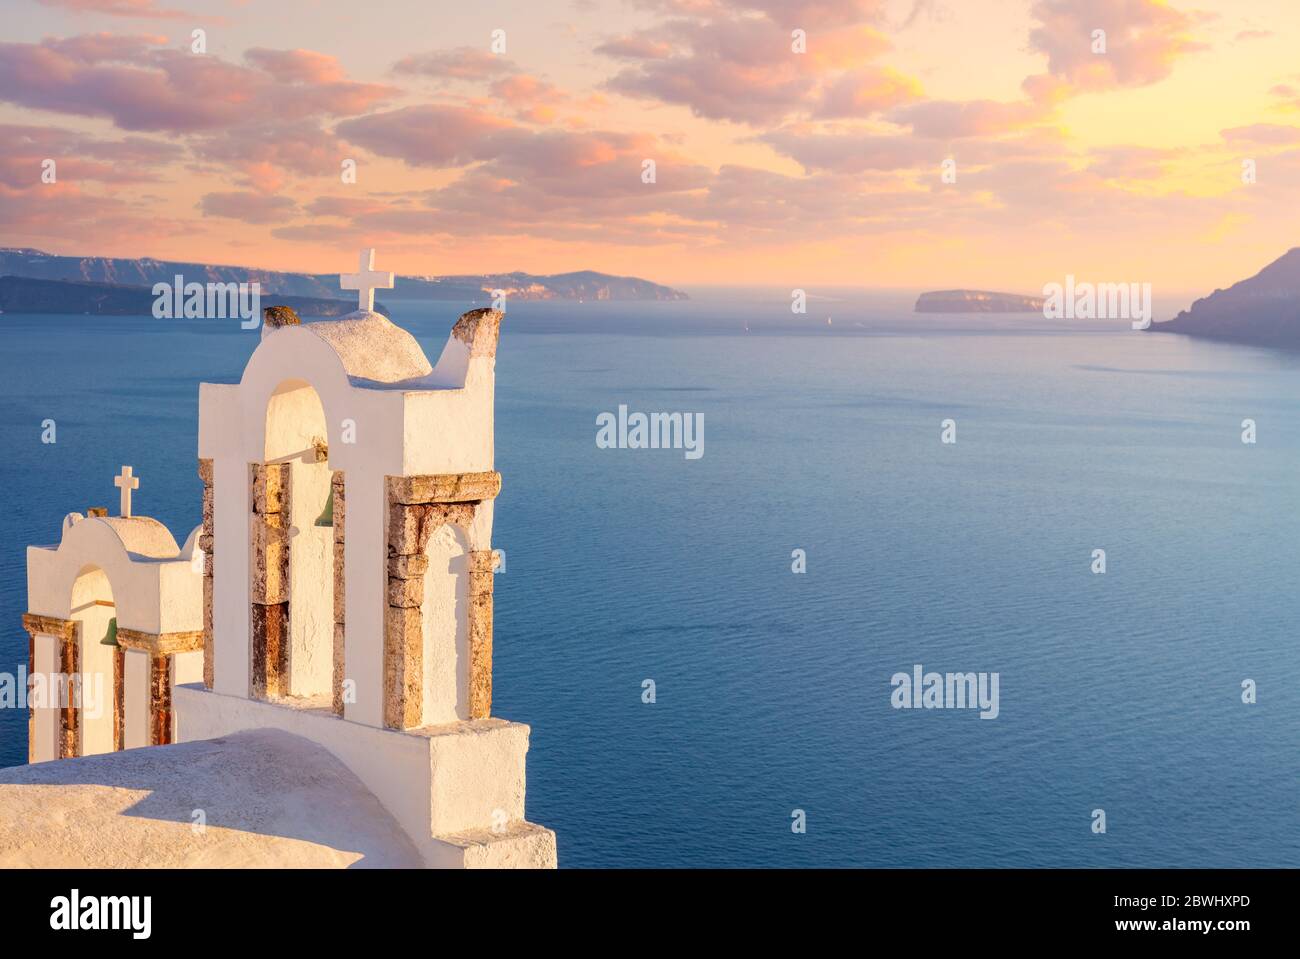 Serata dolce - tramonto romantico sulla popolare localita' turistica dell'isola di Santorini. Arco con una campana, mare blu e romantico cielo di tramonto a Oia al tramonto, isola San Foto Stock